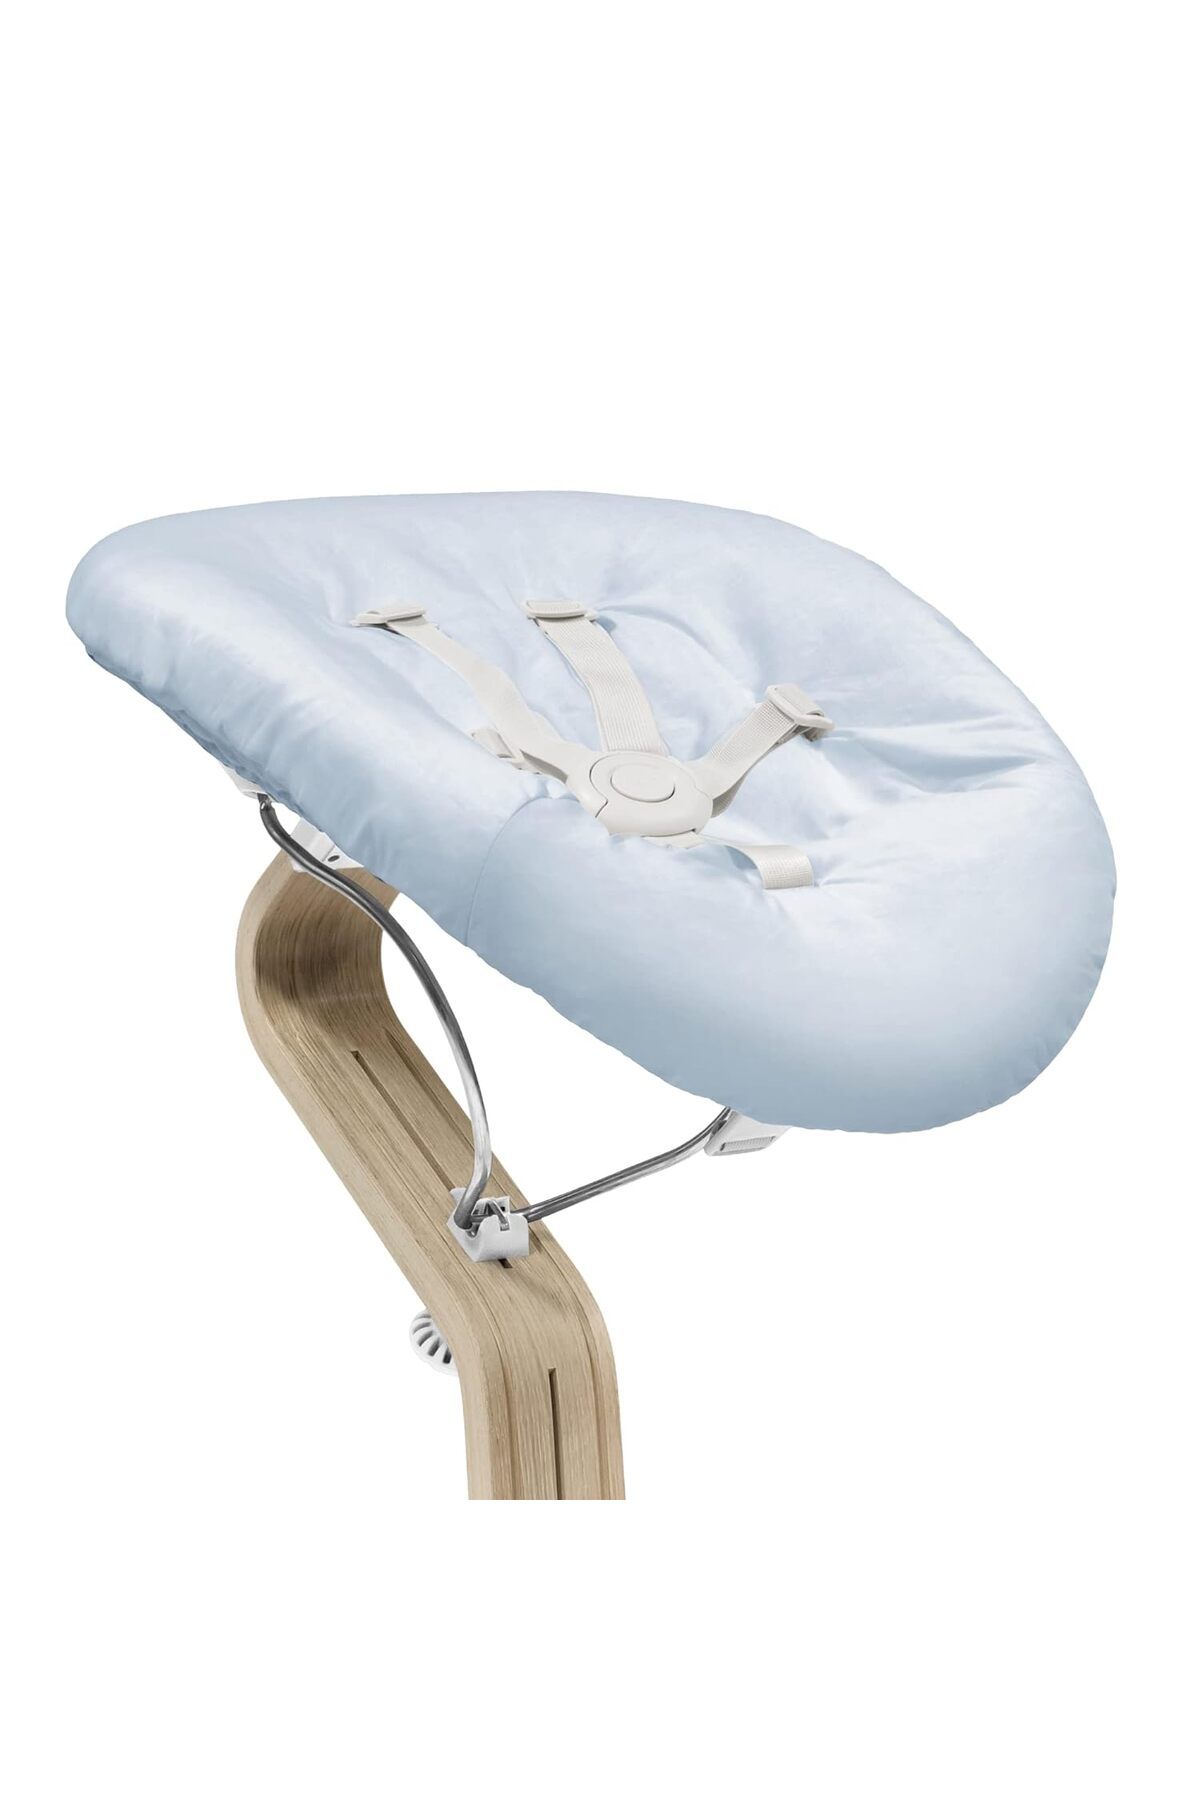 Stokke Nomi Sandalyesi için Newborn set, 5 noktalı emniyet kemeri ve ters çevrilebilir, yıkanabilir minder